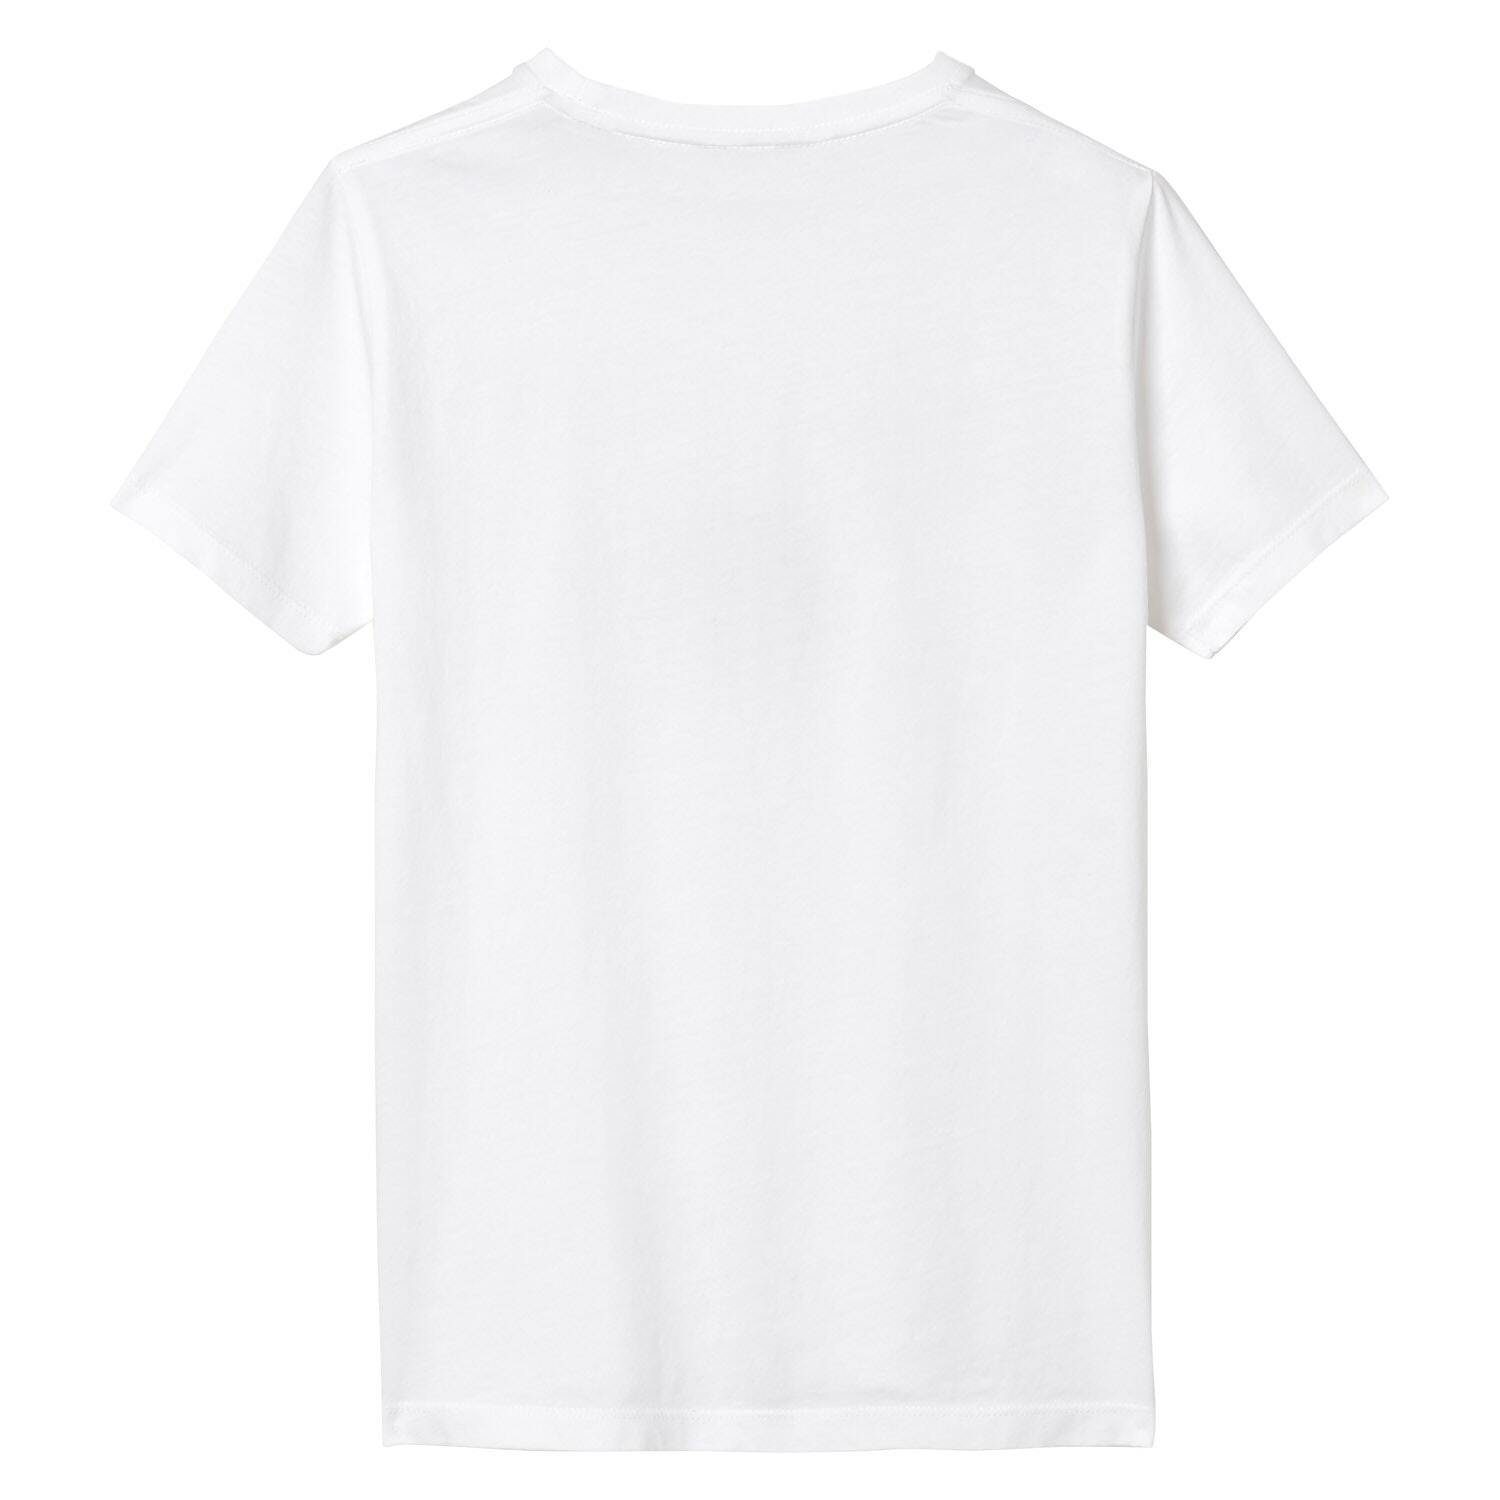 Gant T-Shirt Jungen T-Shirt Kurzarm - Teen Weiß SHIELD Boys Logo